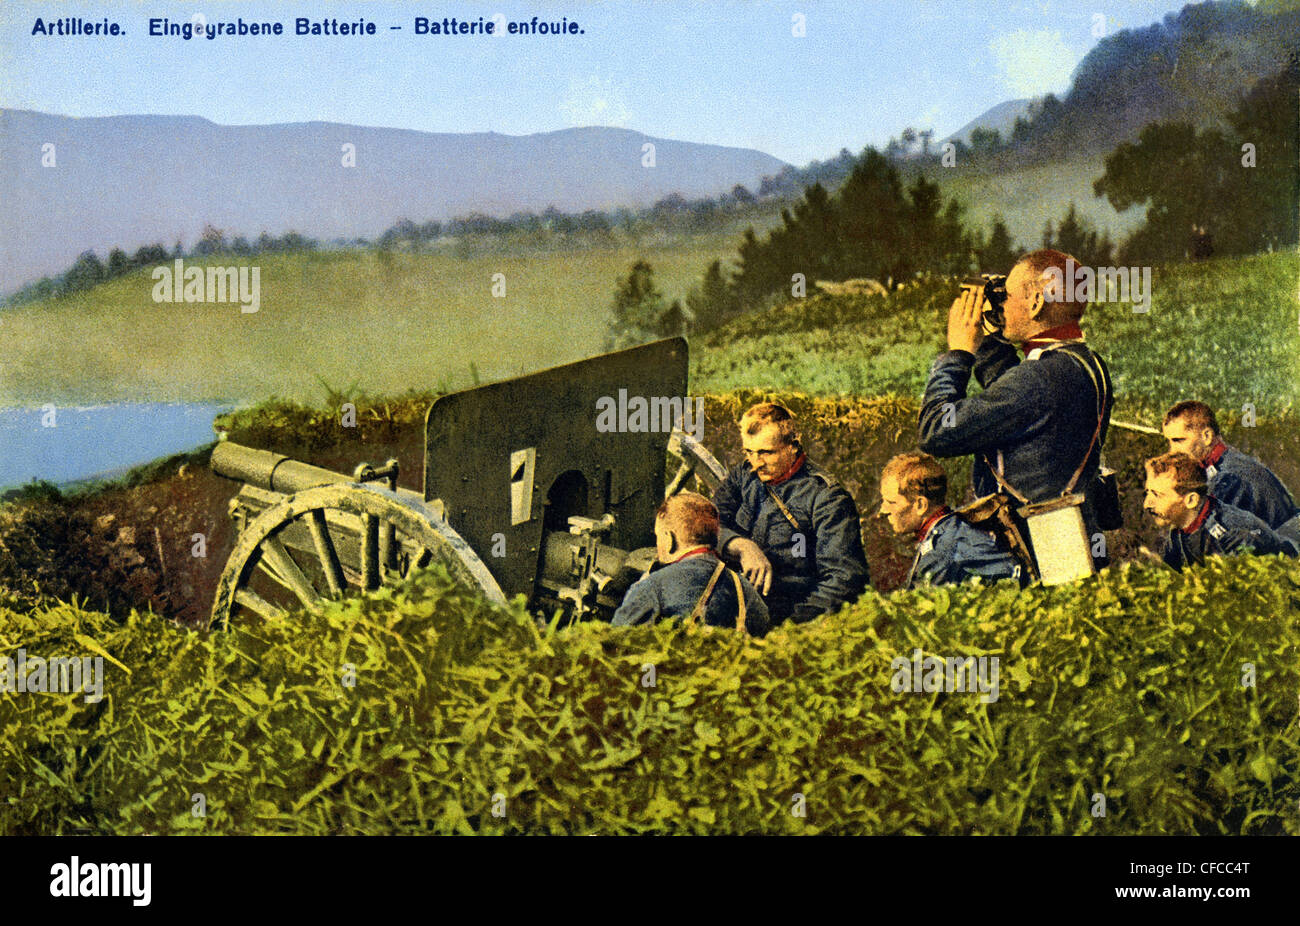 L'artillerie, creusée en batterie, batterie, Allemand, soldat, armée, militaire, l'Allemagne, l'obusier, cannon, manœuvre, pente, 1914, World Wa Banque D'Images